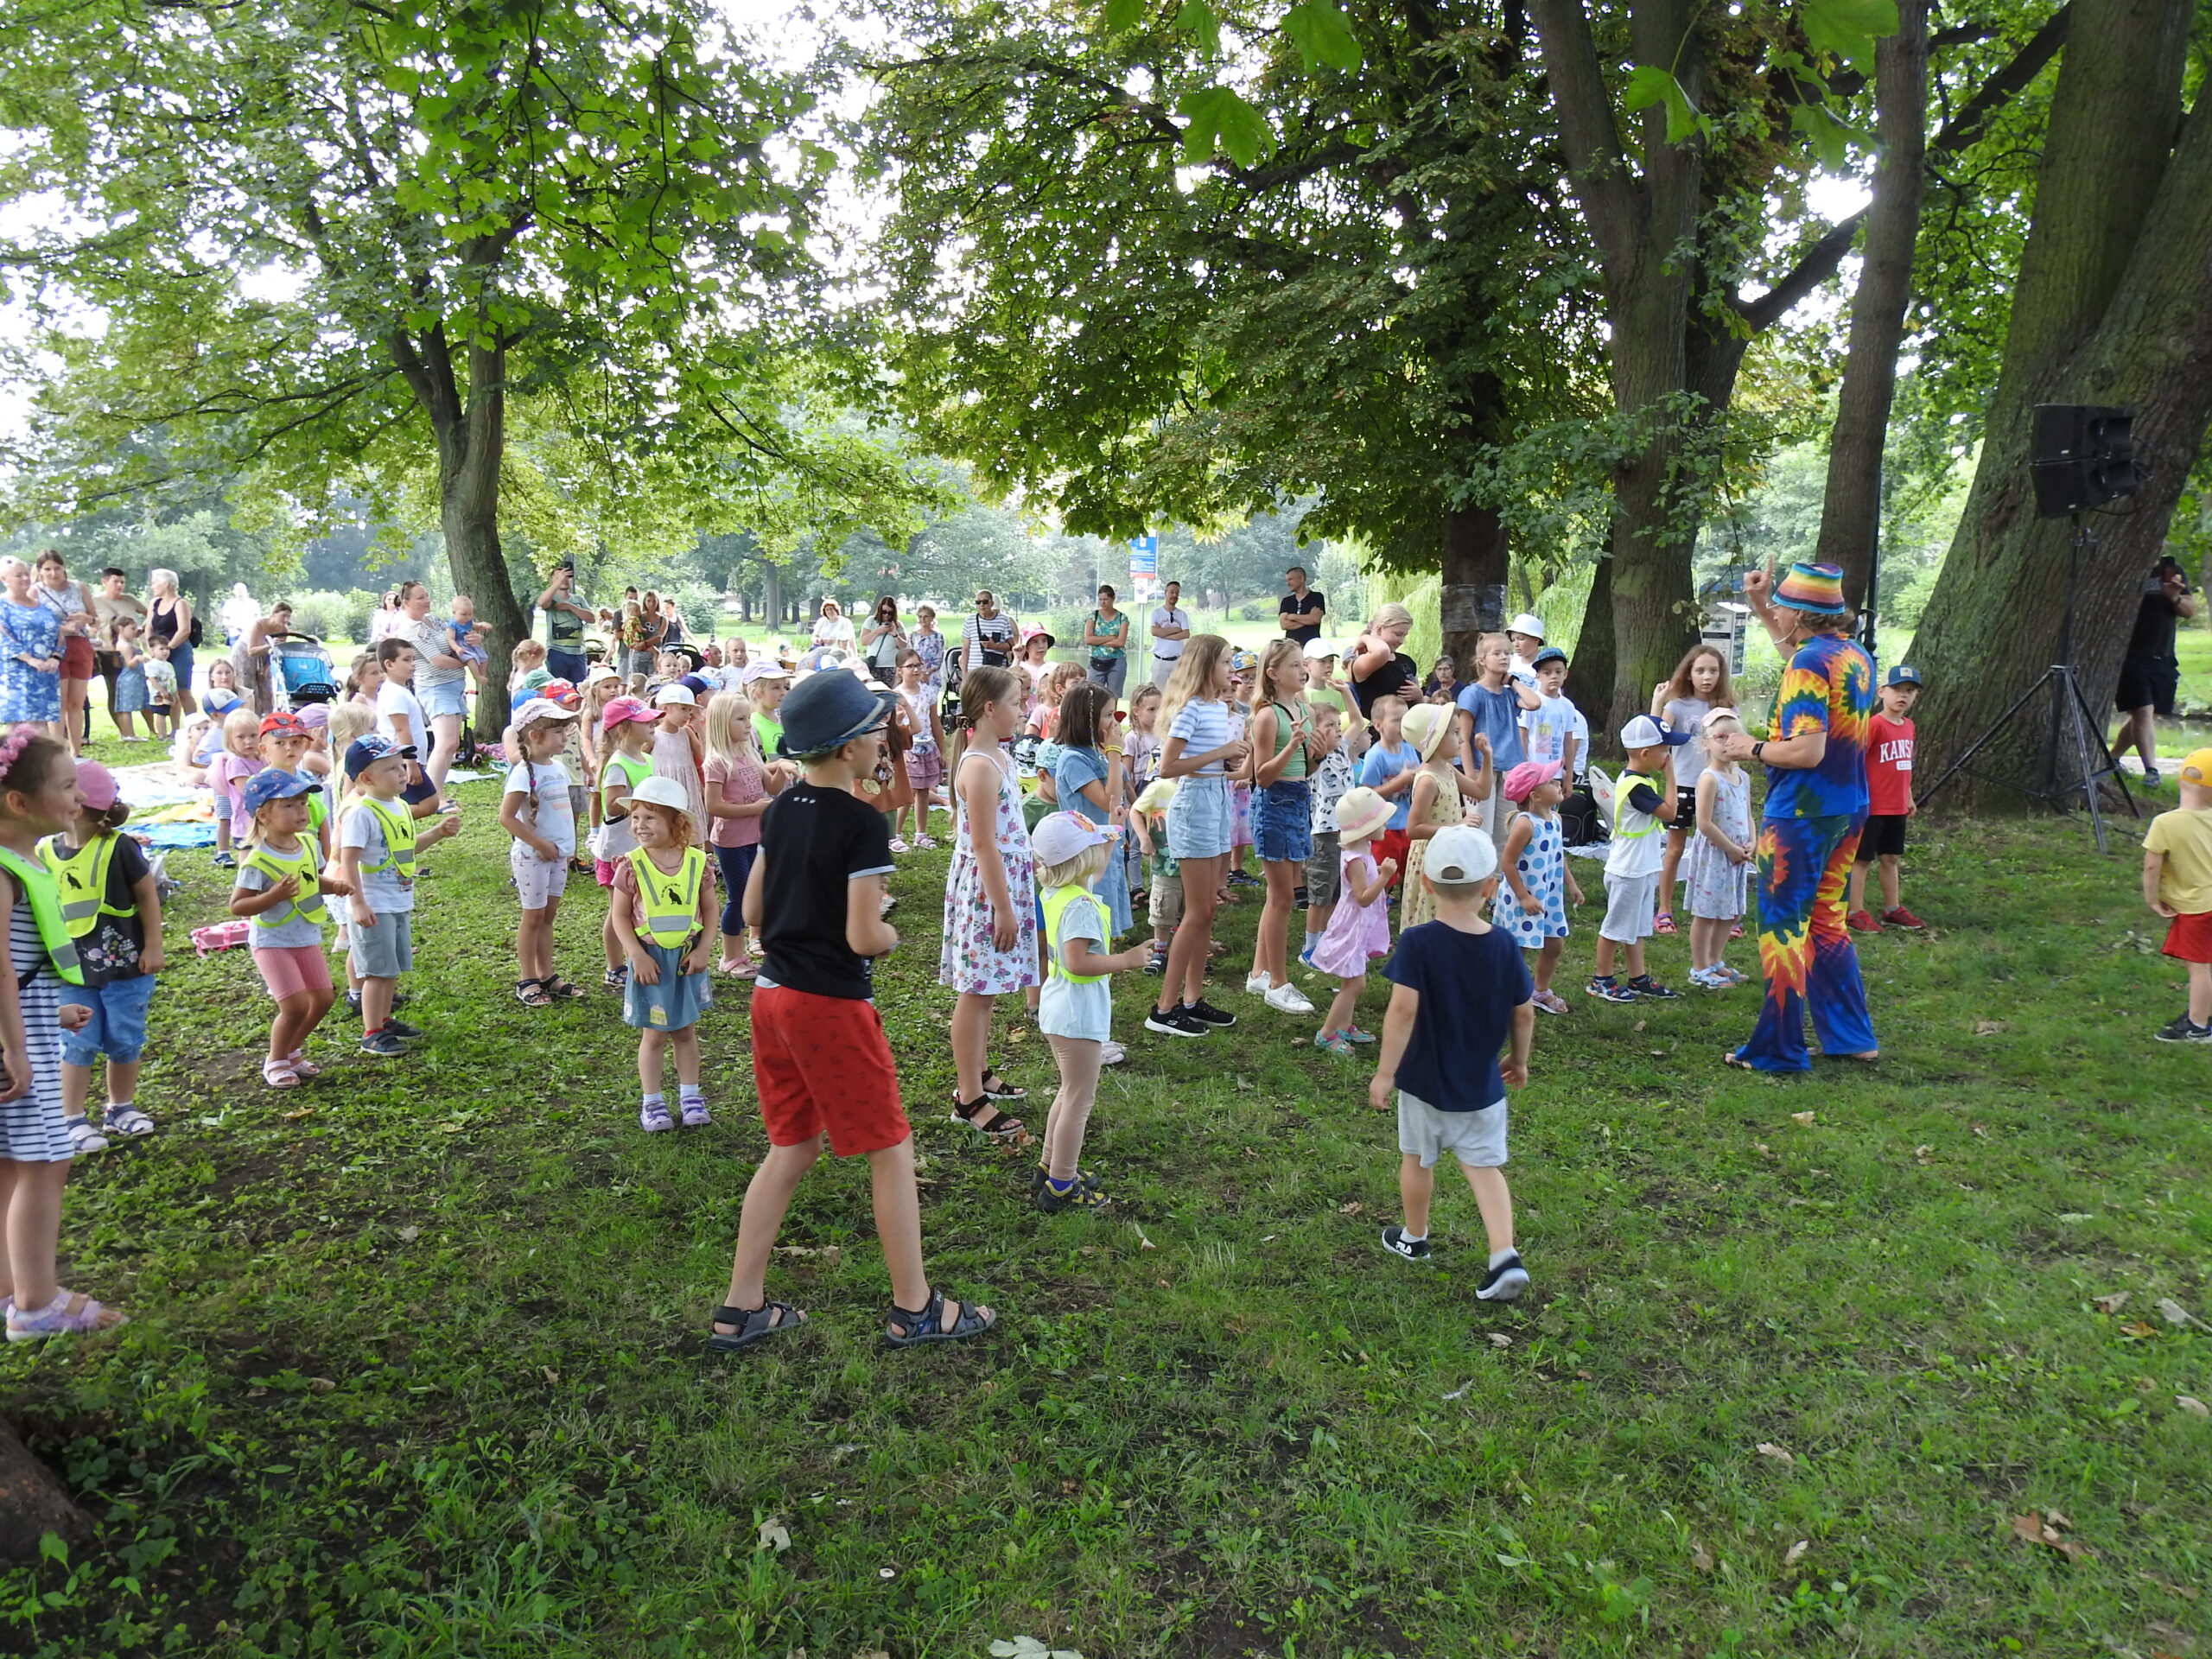 Duża grupa dzieci stoi naprzeciw osoby dorosłej ubranej w kolorowy strój, która trzyma rękę uniesioną w górę. W oddali stoi duża grupa osób dorosłych przyglądających się dzieciom. W tle drzewa.